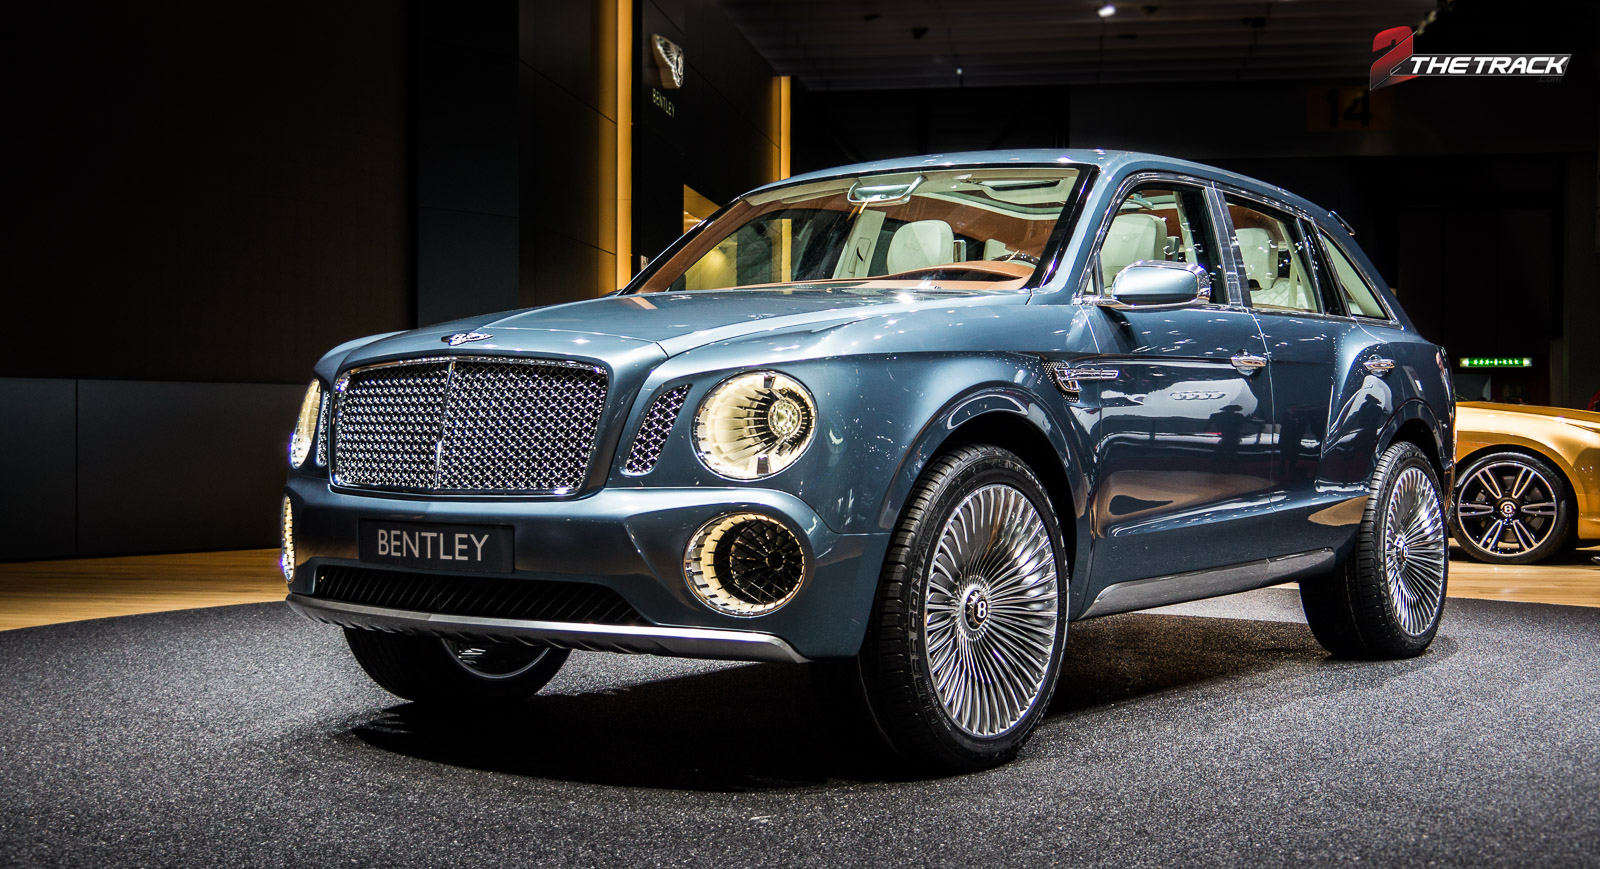 De EXP 9 F, onthuld op de Autosalon Genève 2012 was de aankondiging van Bentley's SUV plannen.